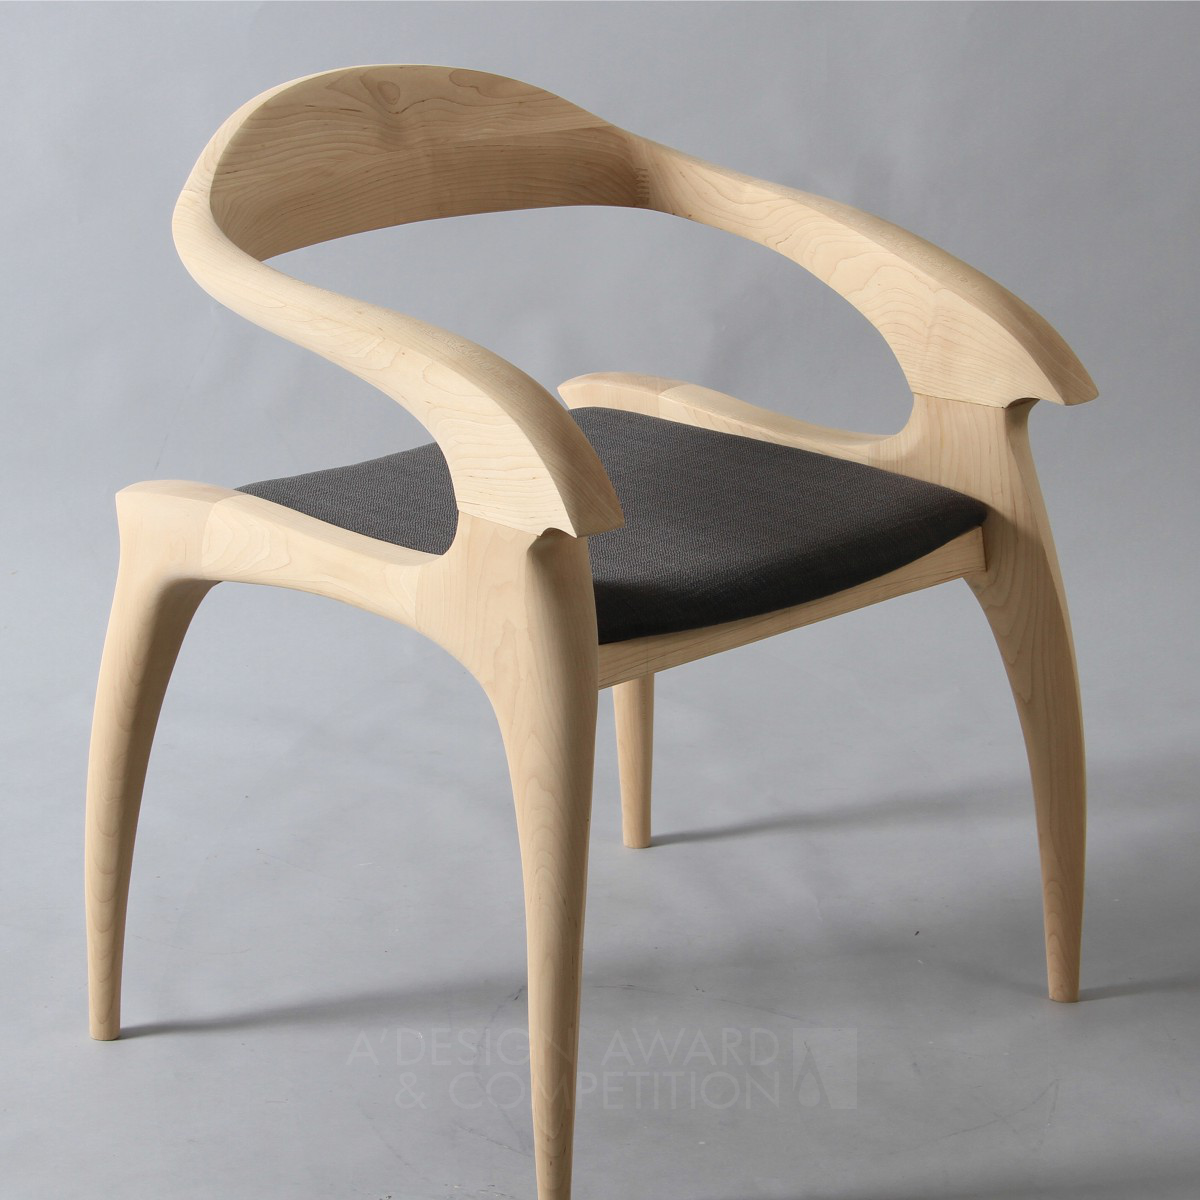 FORWARD / BEHIND Chair by CHIA-EN,WENG